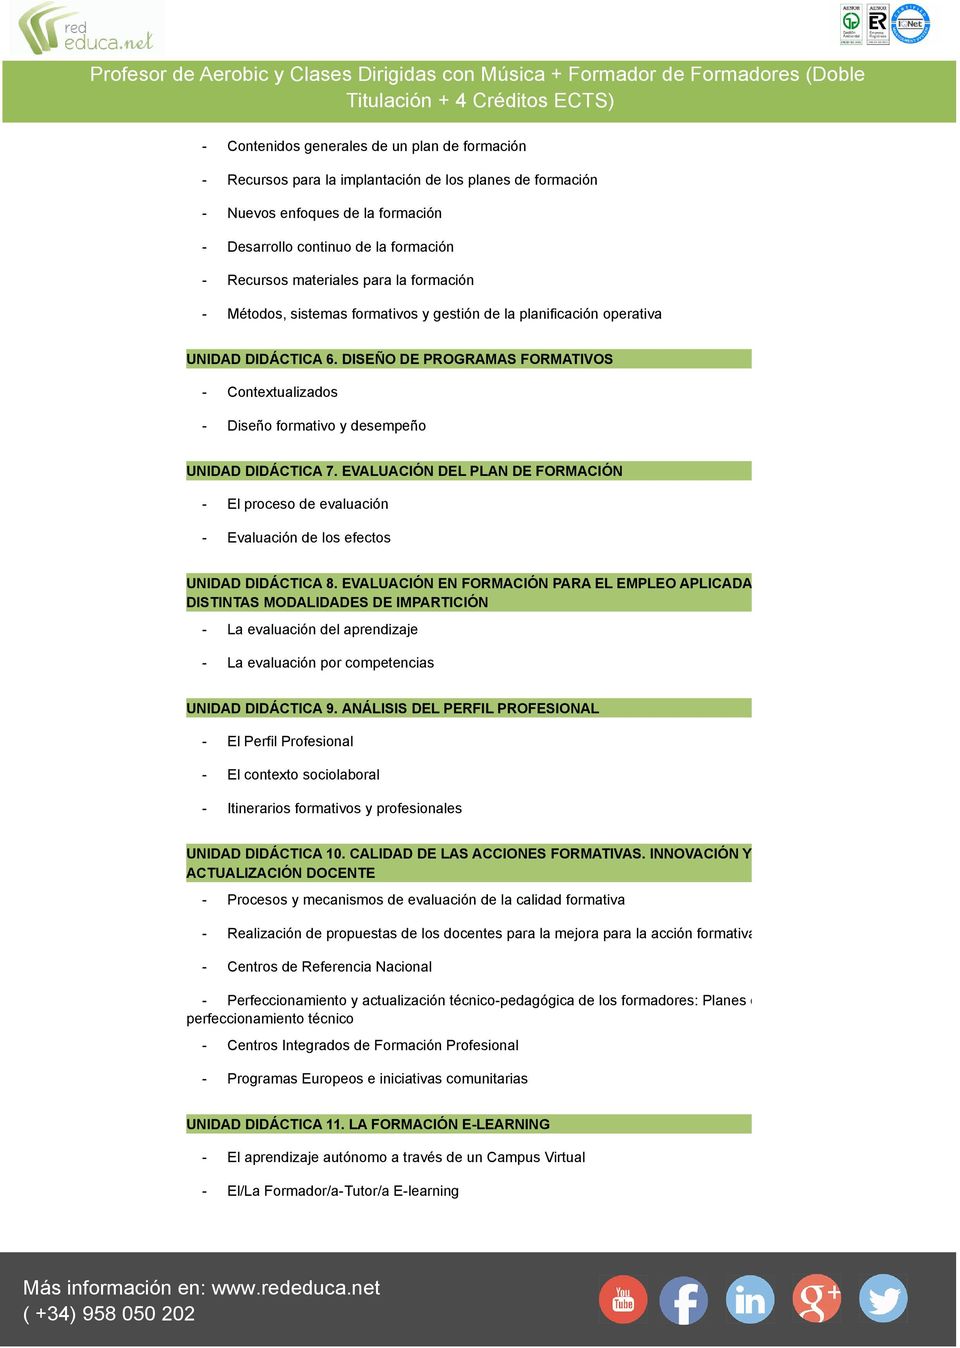 DISEÑO DE PROGRAMAS FORMATIVOS - Contextualizados - Diseño formativo y desempeño UNIDAD DIDÁCTICA 7.